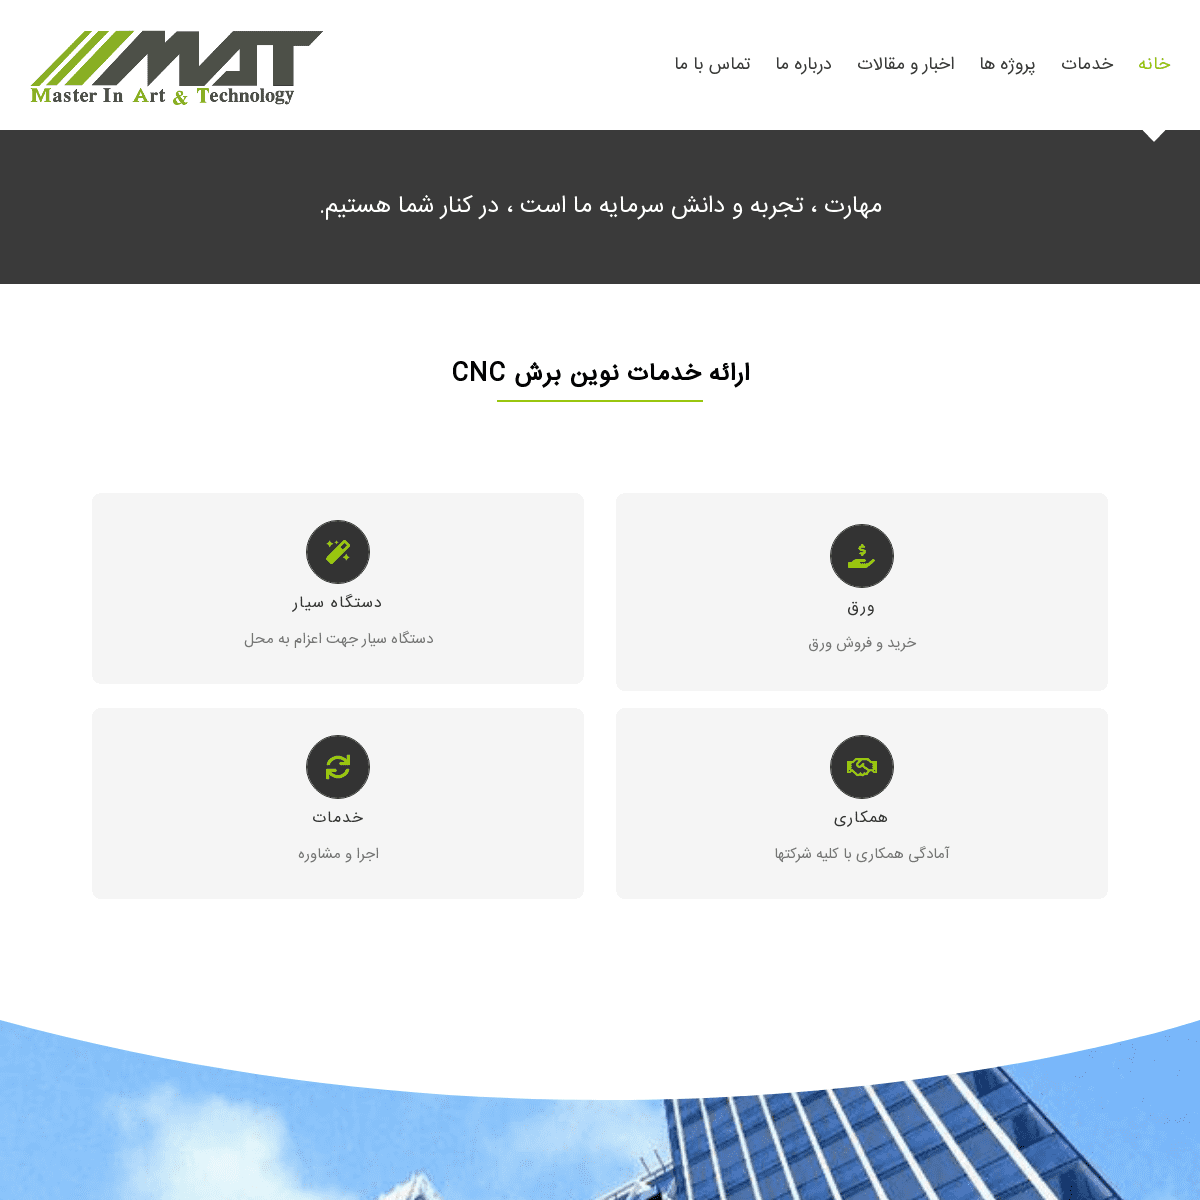 A complete backup of matcnc.com